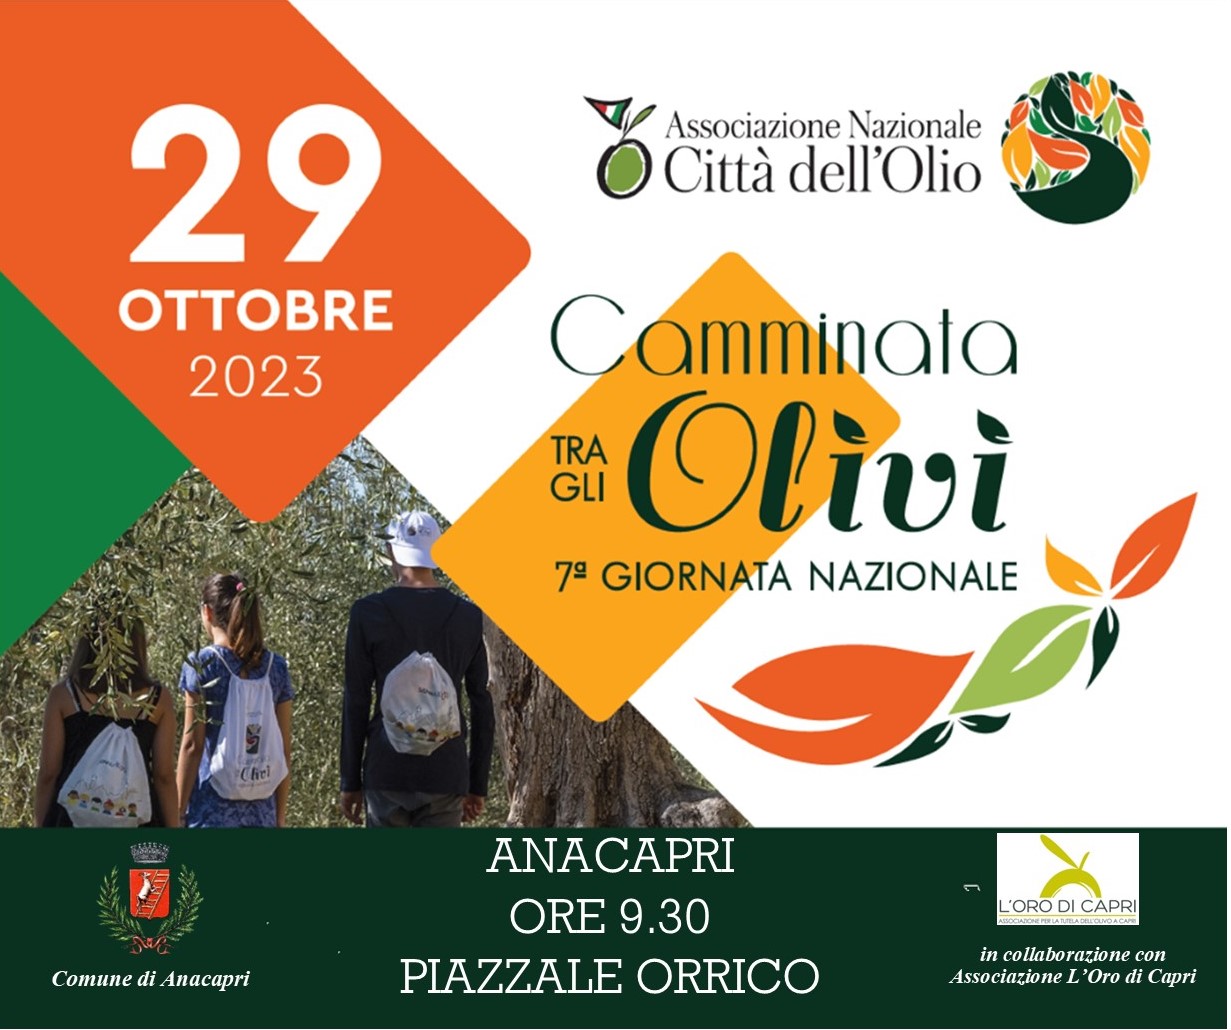 “Camminata tra gli olivi”, Anacapri partecipa alla giornata nazionale giunta alla settima edizione